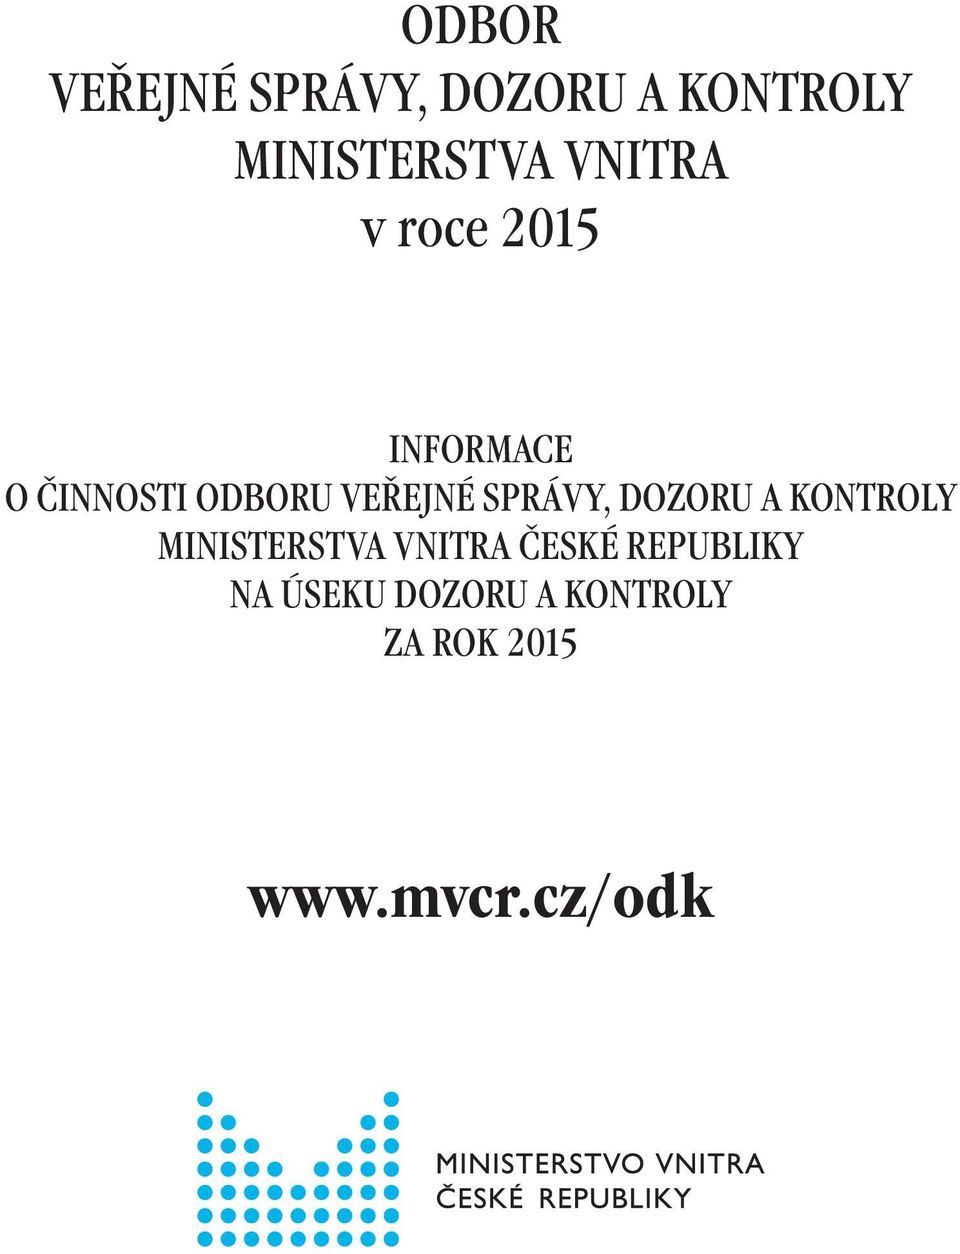 SPRÁVY, DOZORU A KONTROLY MINISTERSTVA VNITRA ČESKÉ